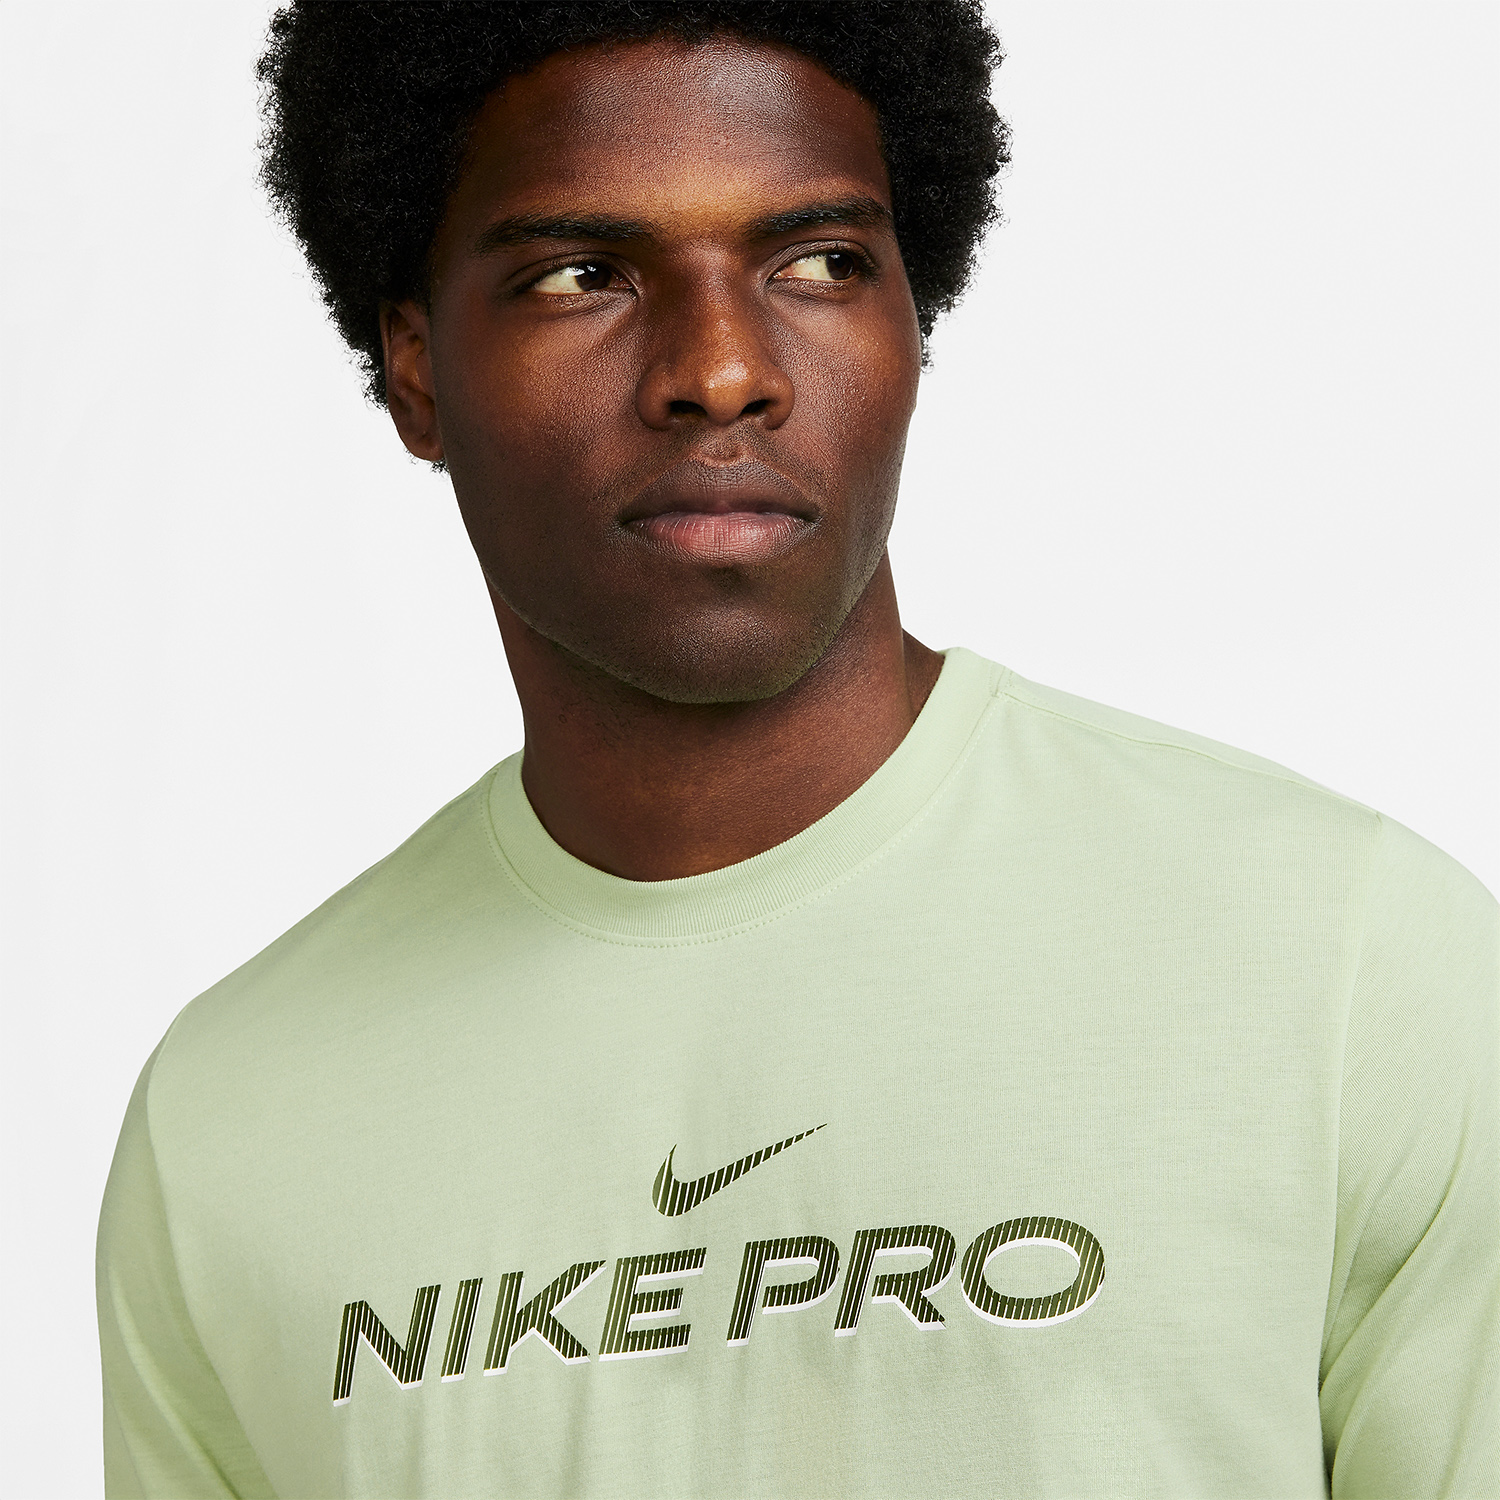 Nike Pro Fitness Camiseta - Olive Aura